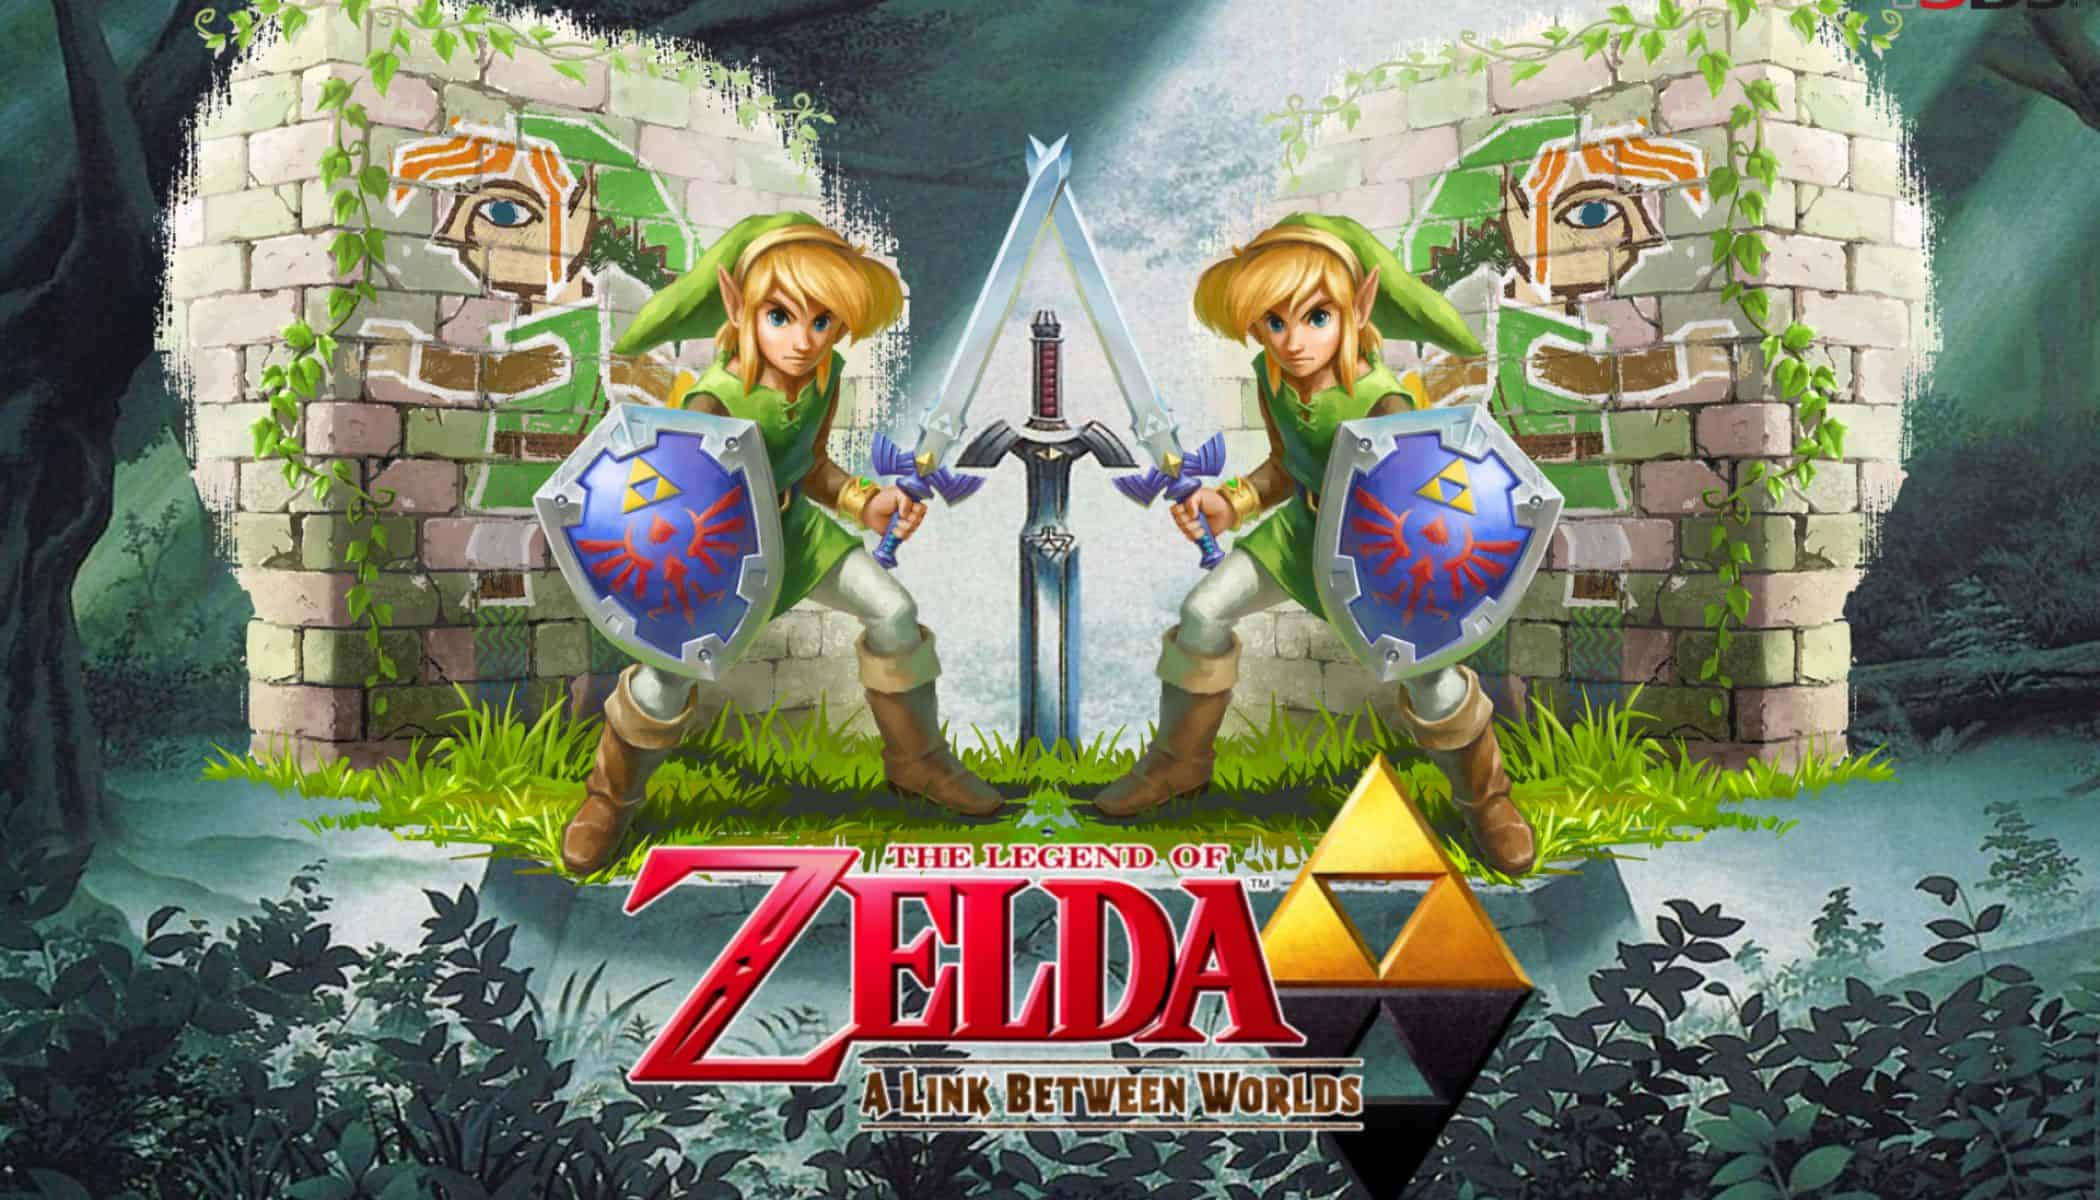 Best Zelda Games - The Legend of Zelda - A Link Between Worlds